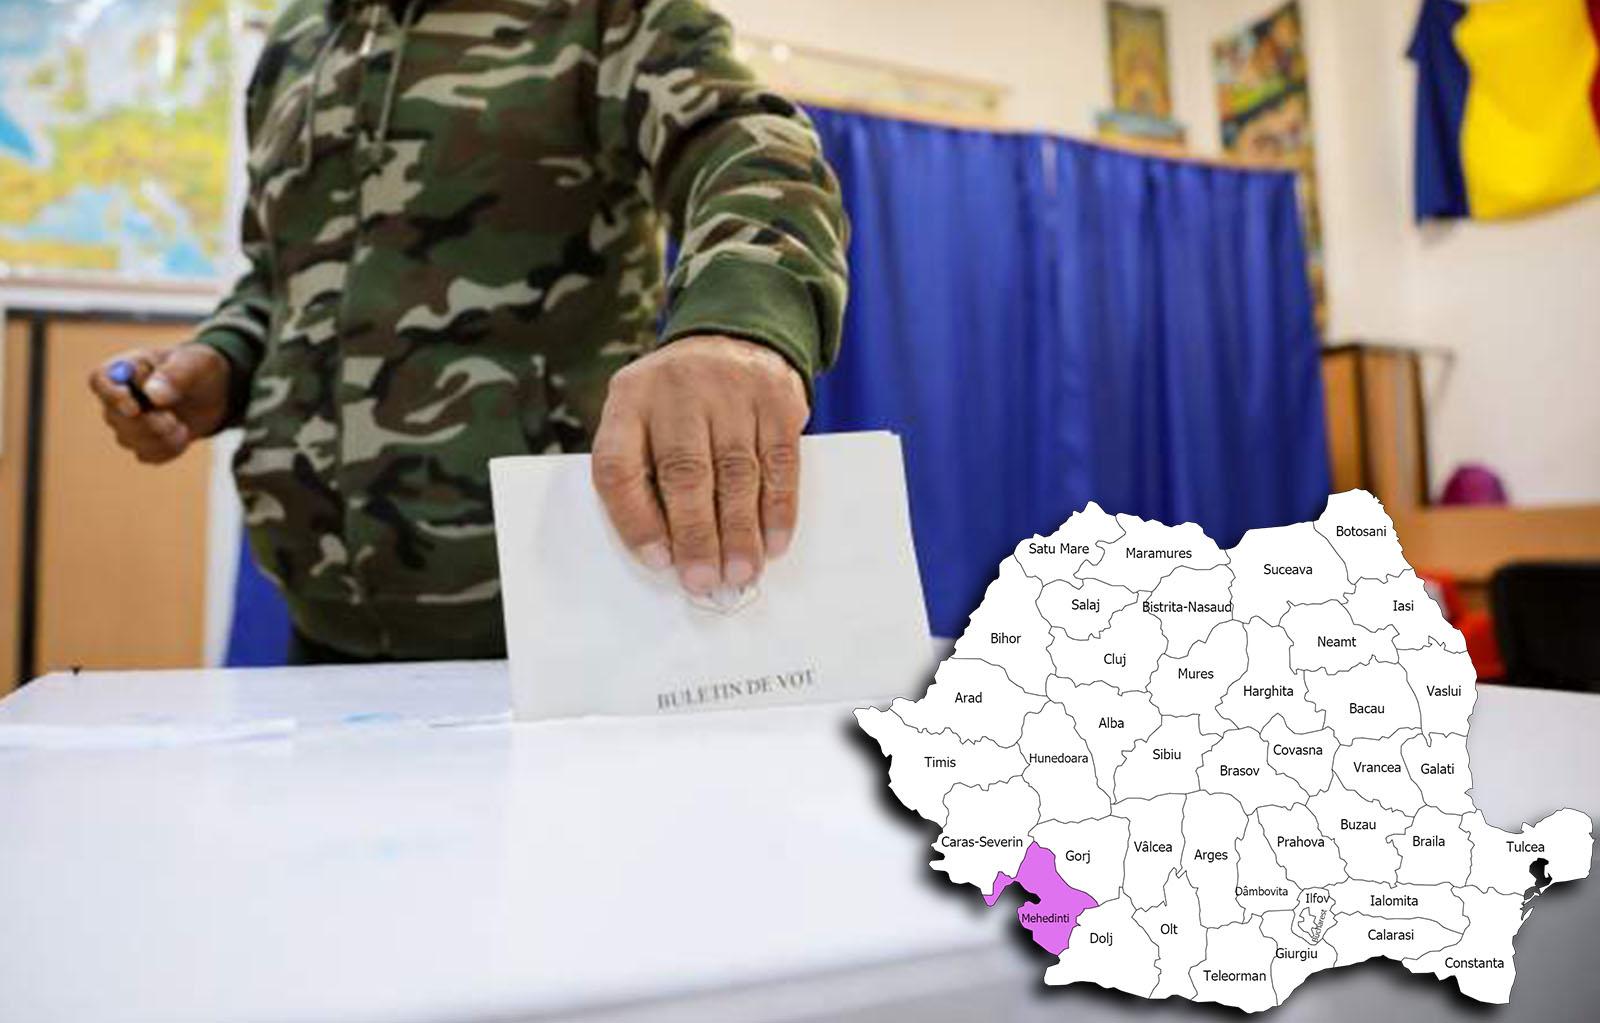 Rezultate alegeri parlamentare 2020 în județul Mehedinți. Cine câștigă alegerile pentru Senat și Camera Deputaților